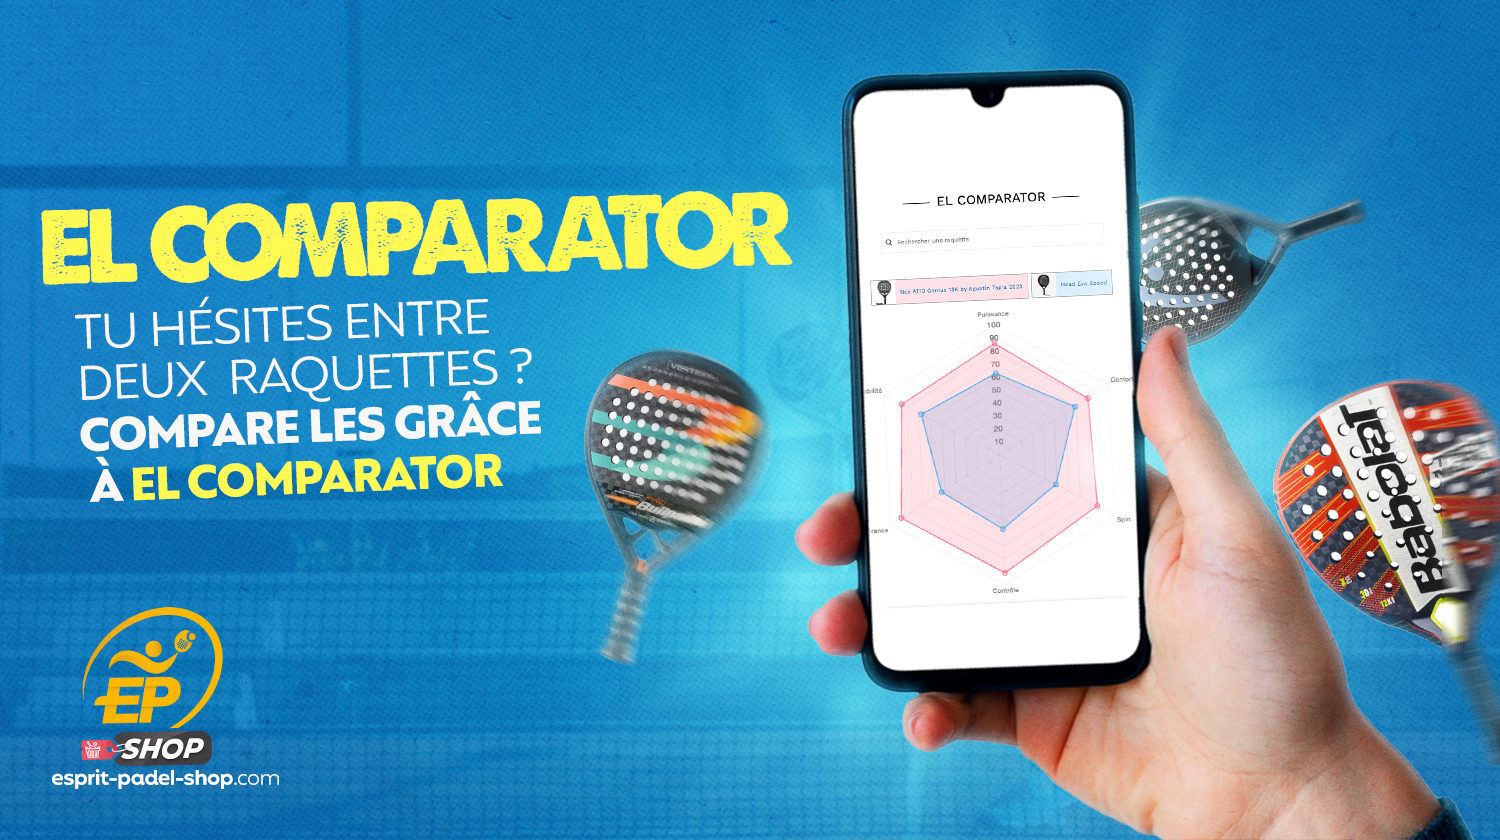 "El Comparator" landar på Esprit Padel UTFORSKA